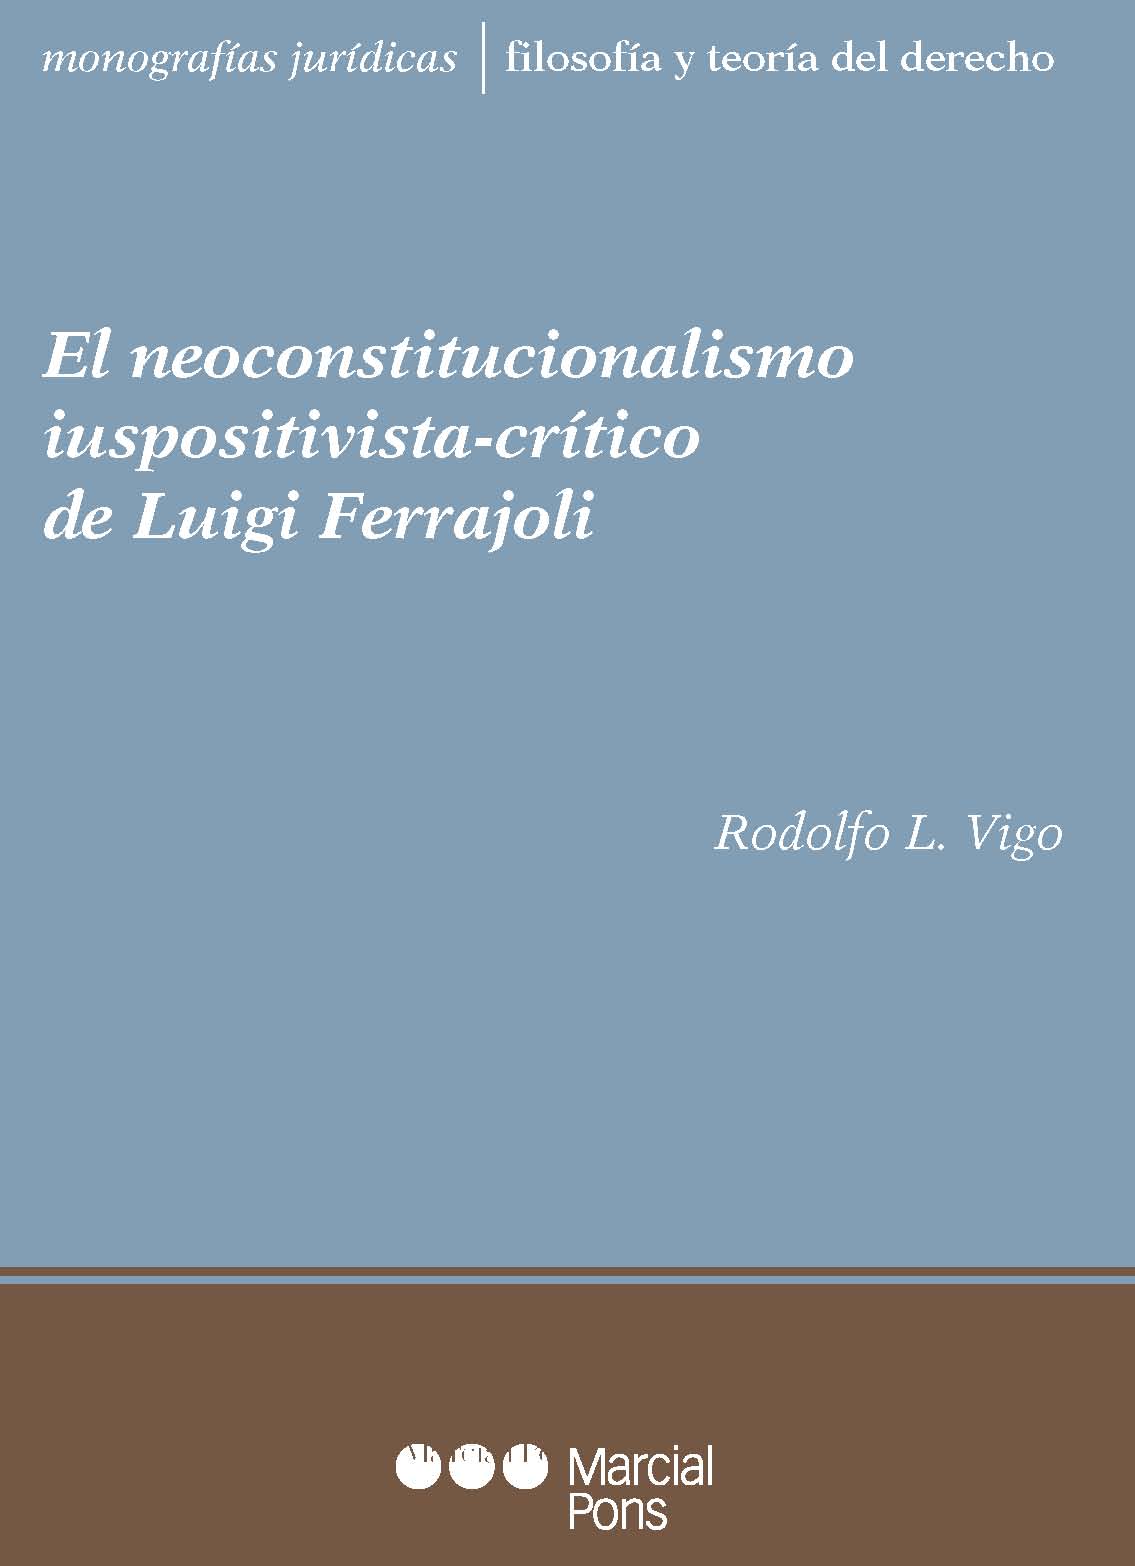 El neoconstitucionalismo iuspositivista-crítico de Luigi Ferrajoli. 9789871775453